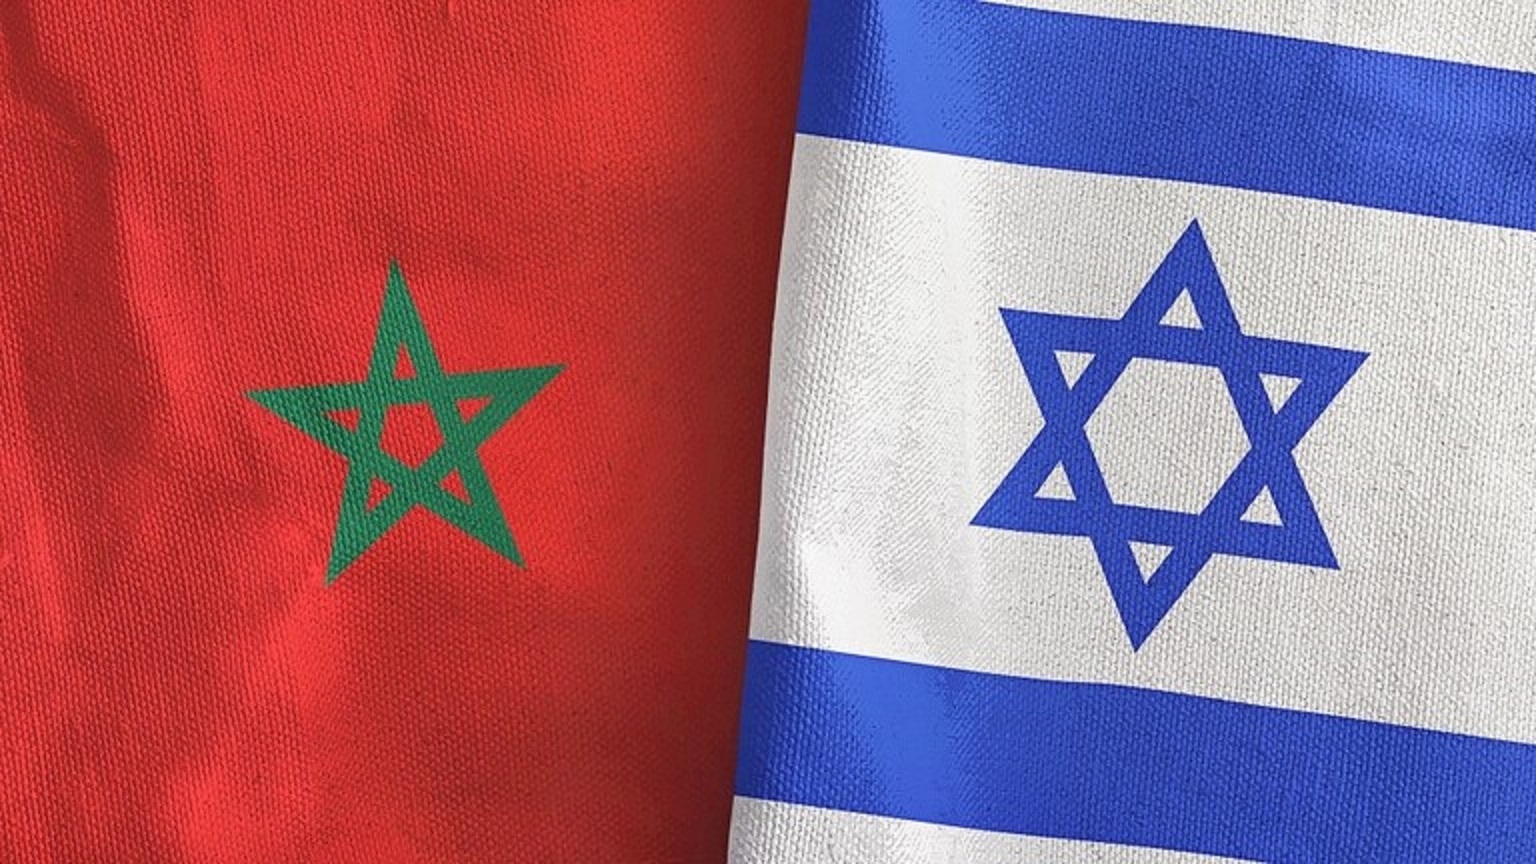 المغرب.. المجموعة النيابية لحزب العدالة والتنمية تعتزم التصويت ضد اتفاق مع إسرائيل‎‎